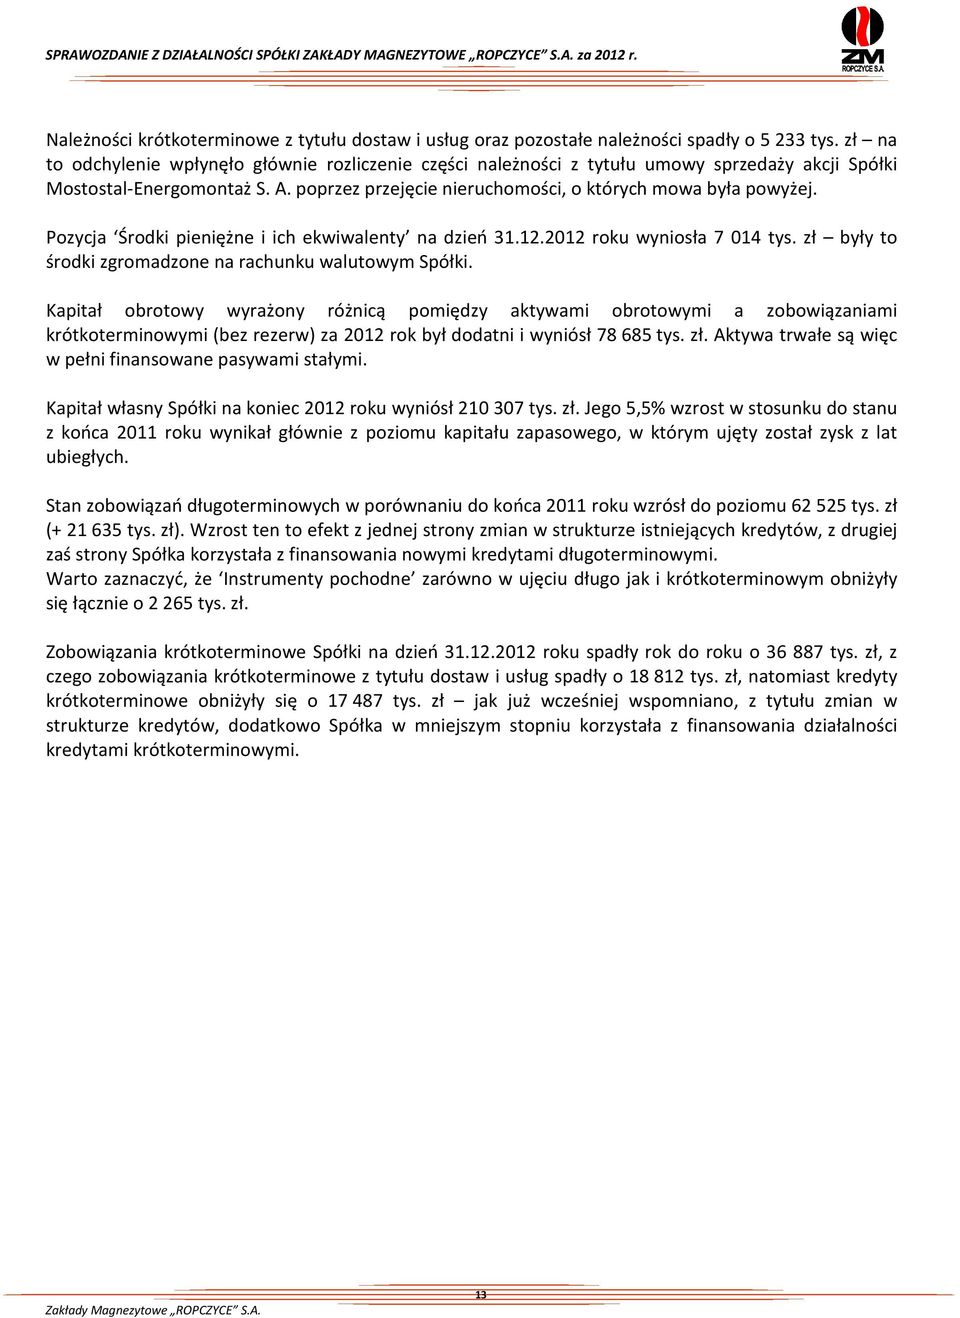 Pozycja Środki pieniężne i ich ekwiwalenty na dzień 31.12.2012 roku wyniosła 7 014 tys. zł były to środki zgromadzone na rachunku walutowym Spółki.